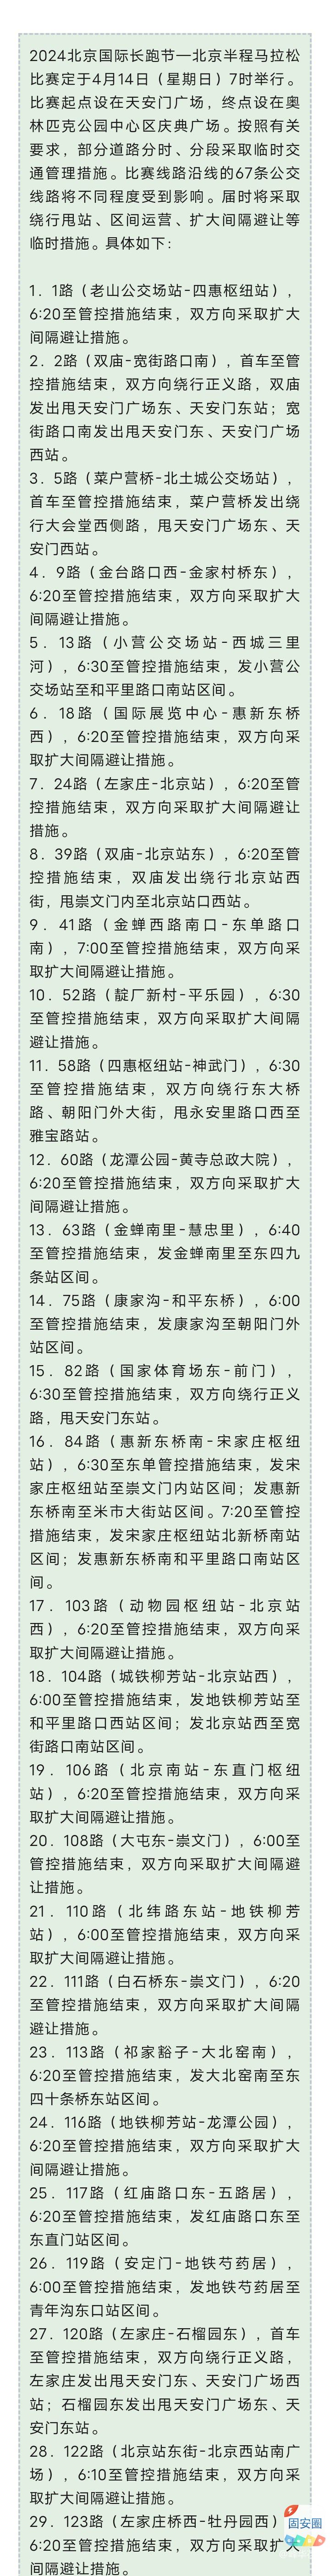 2024北京国际长跑节，明天比赛期间67条公交线路采取临时运营措施8132 作者:峰华花园 帖子ID:300810 